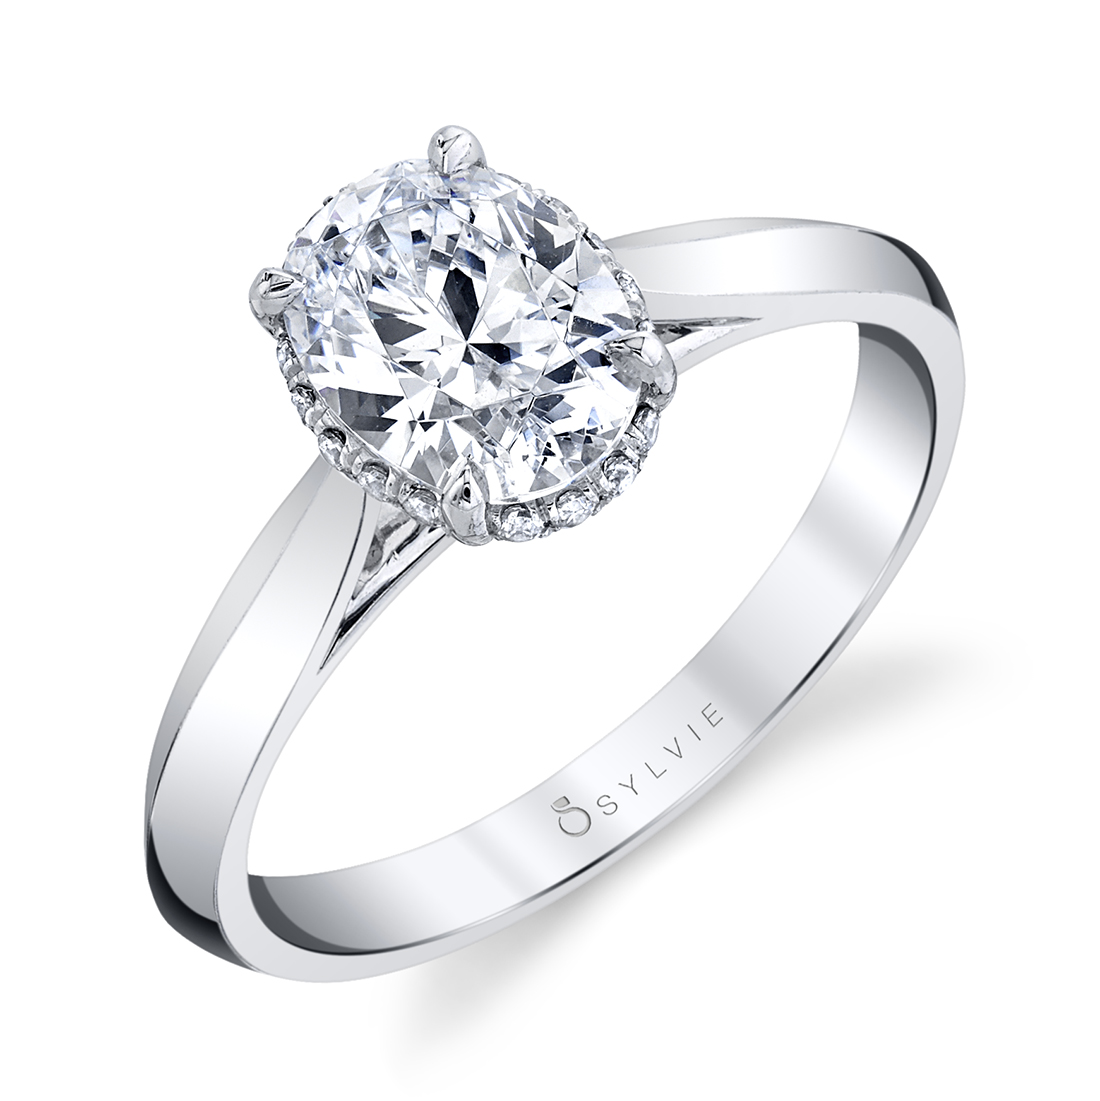 Unique Engagement Rings Without Diamonds - 2020 Popular Unique Wedding ...